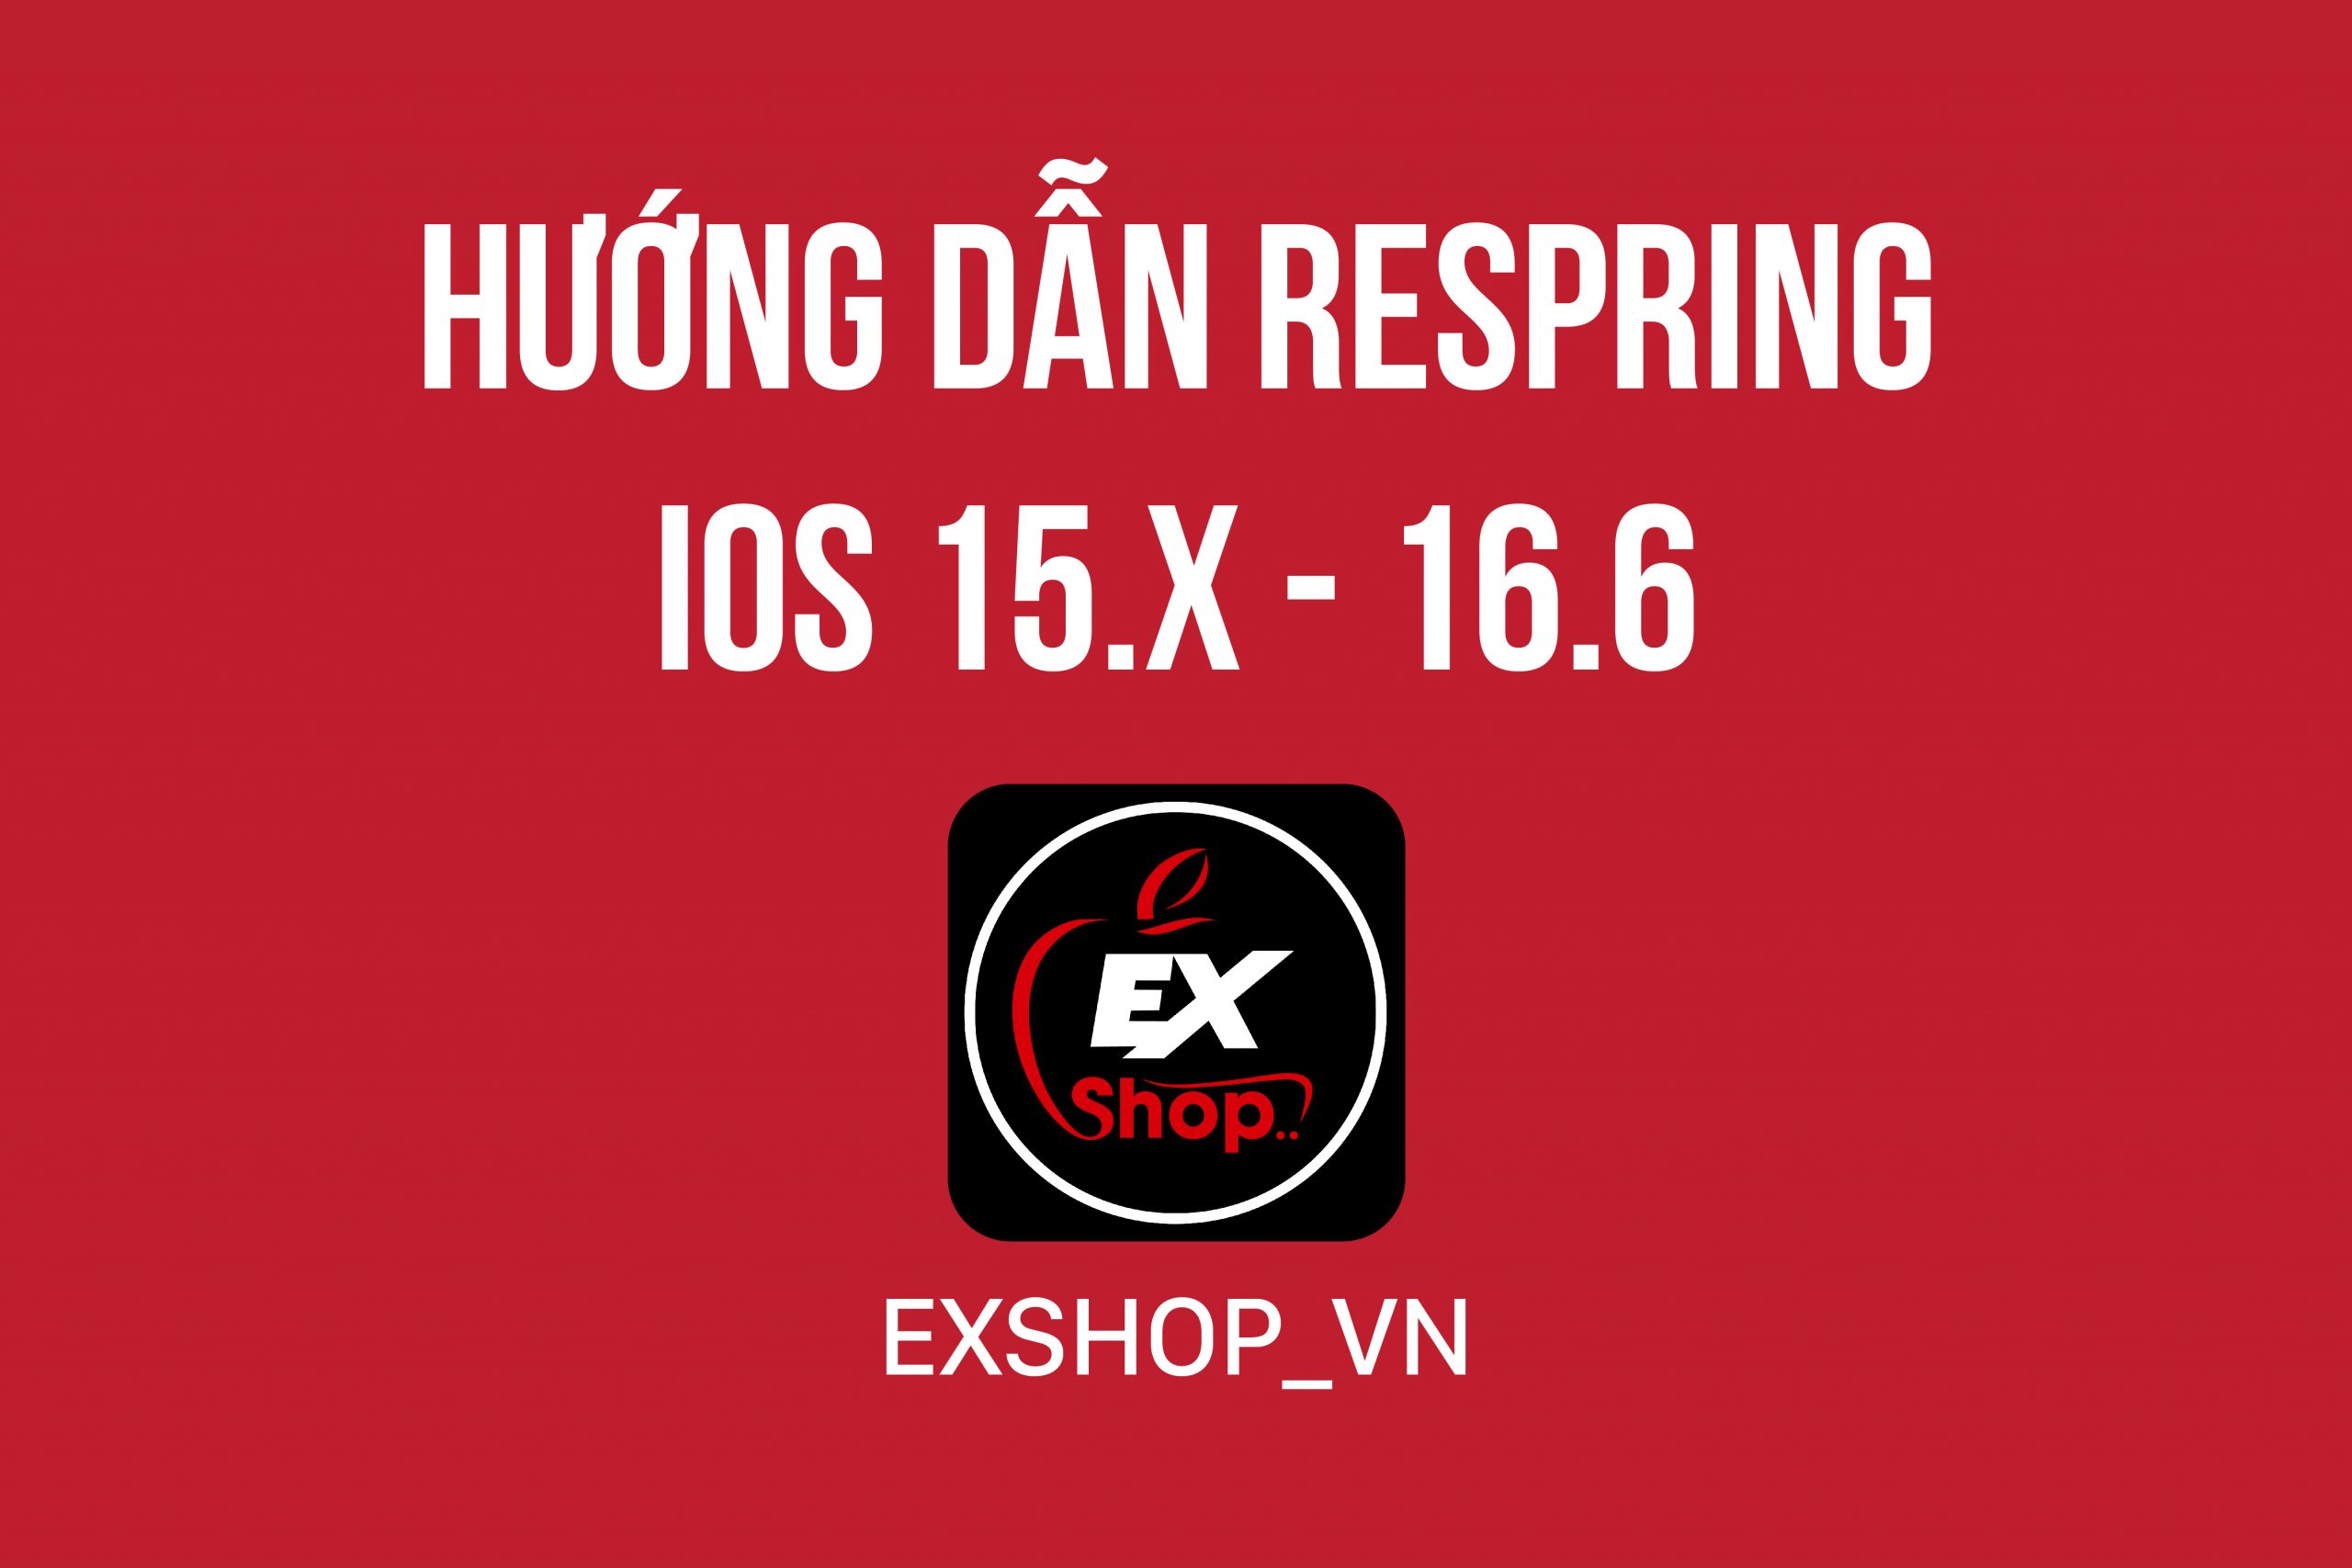 Hướng dẫn Respring iOS 15.x – 16.6 bằng ứng dụng “1 chạm”